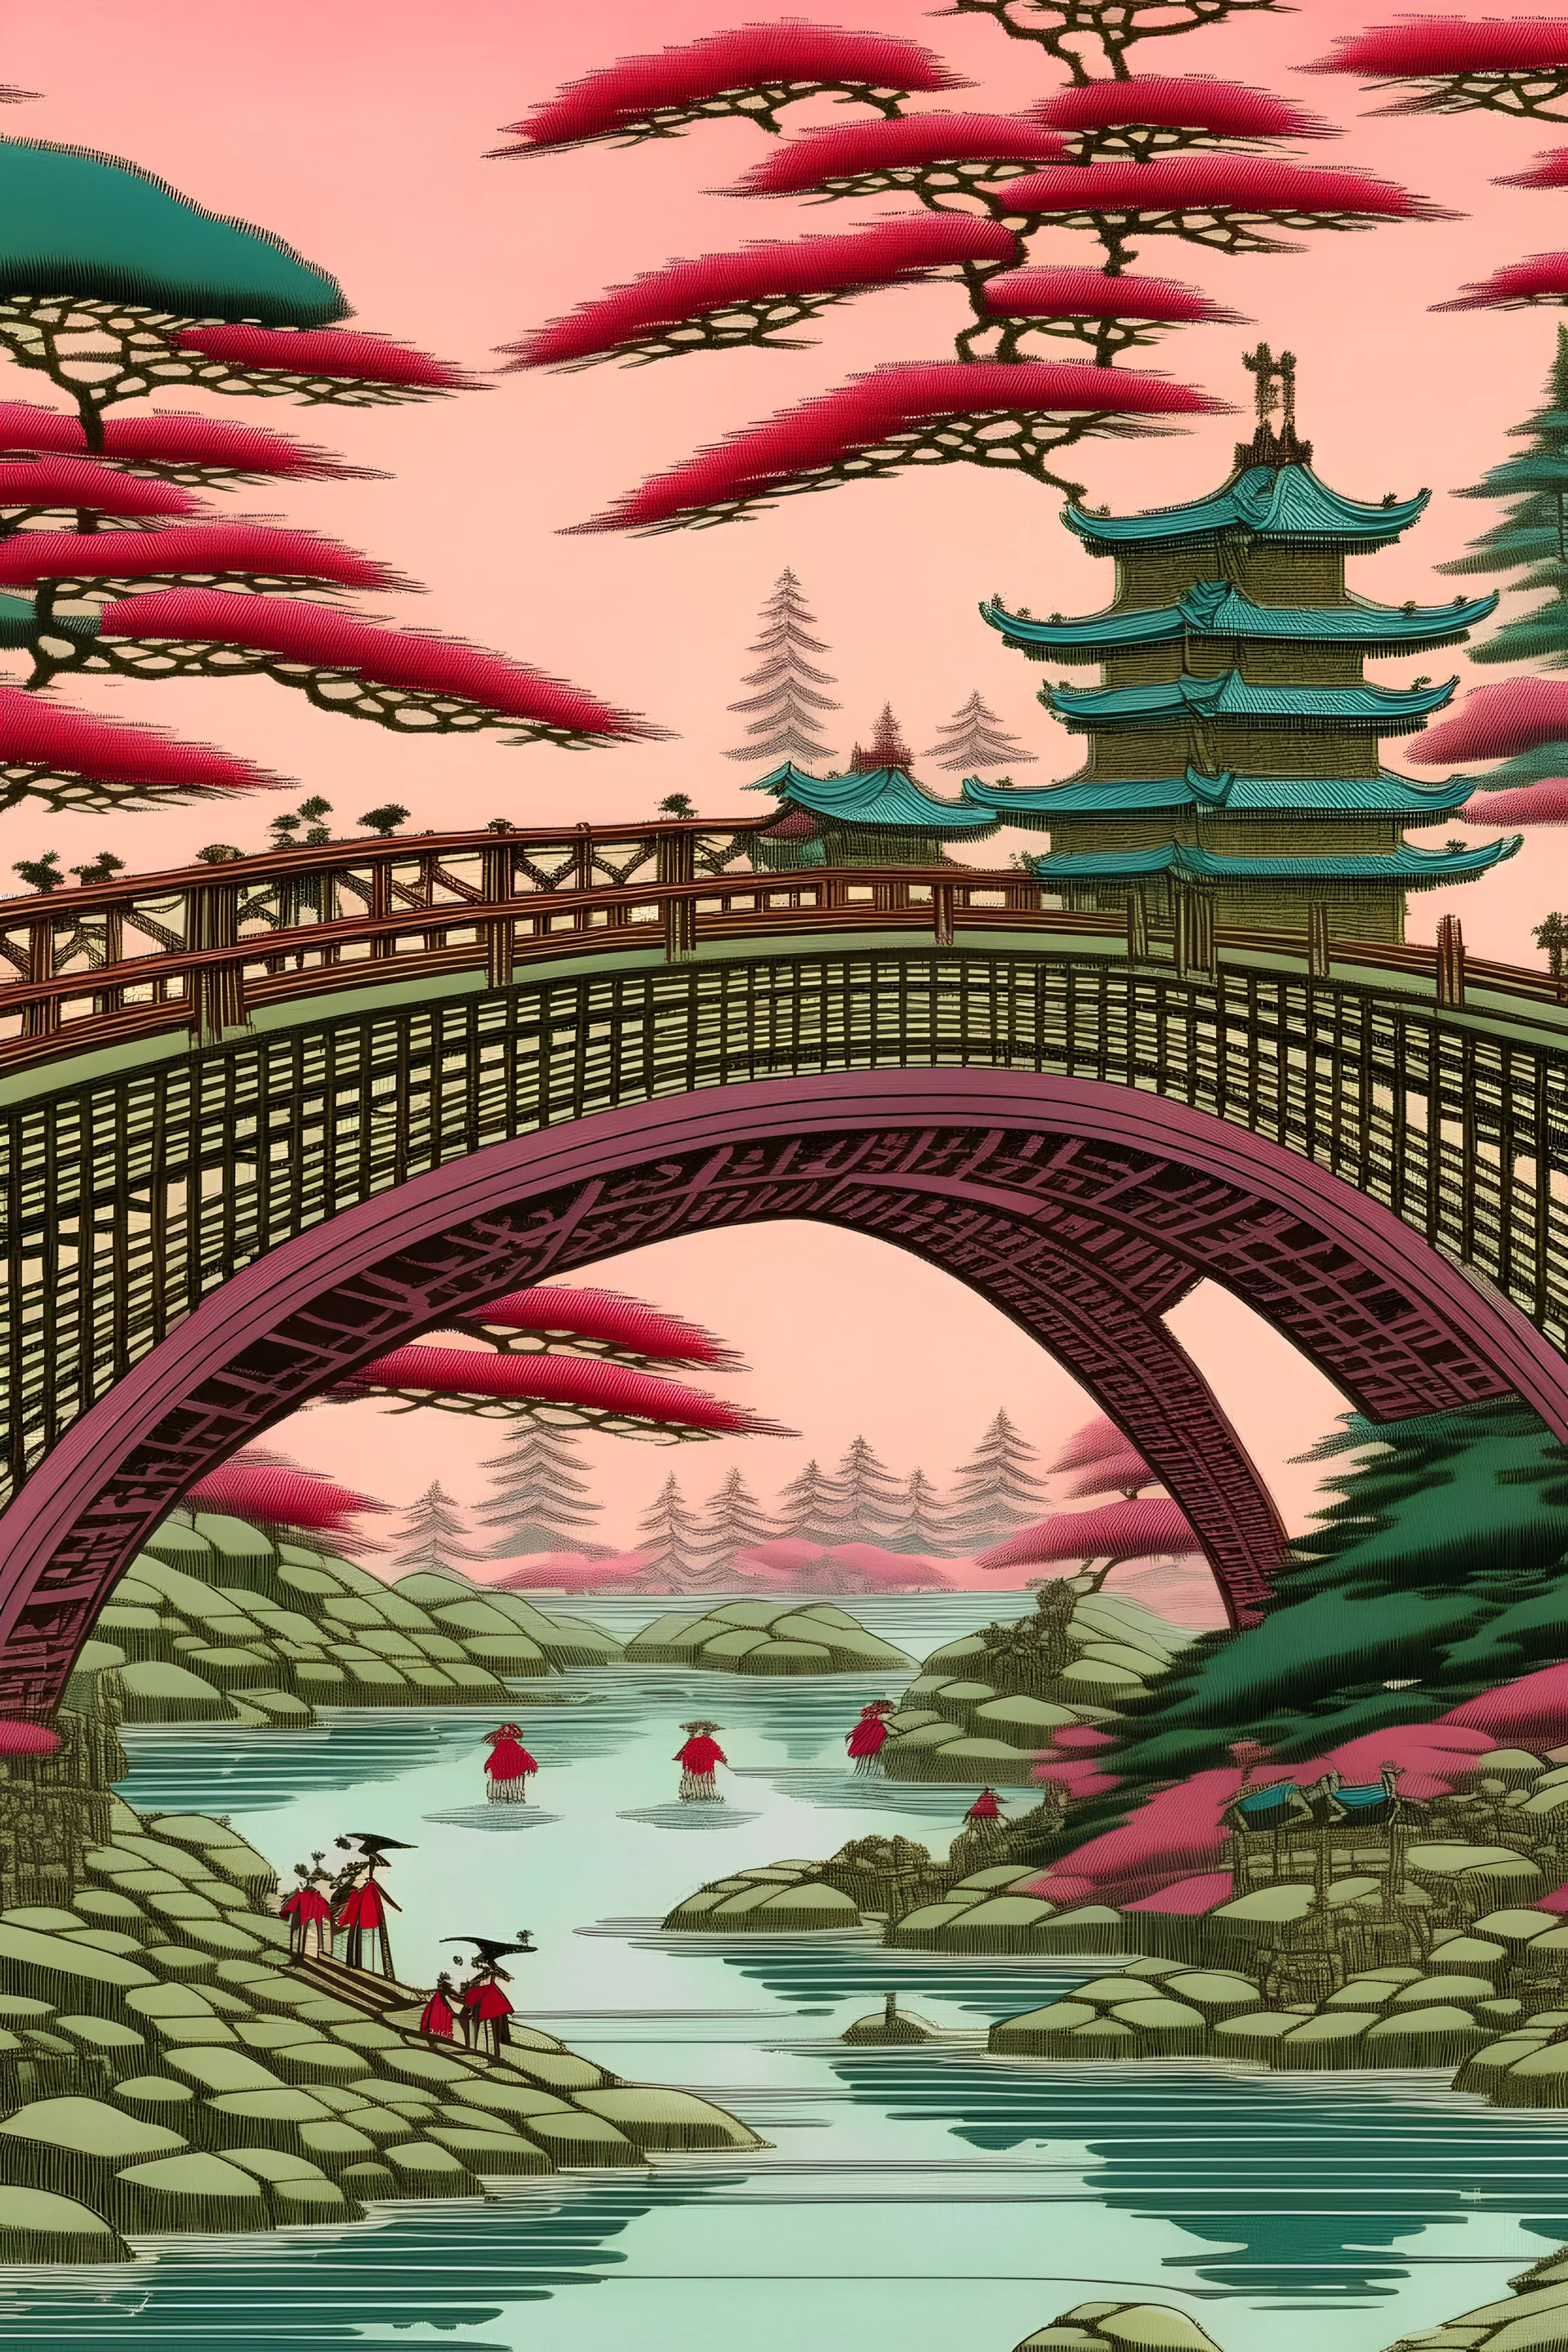 A pink mystical bridge painted by Utagawa Hiroshige